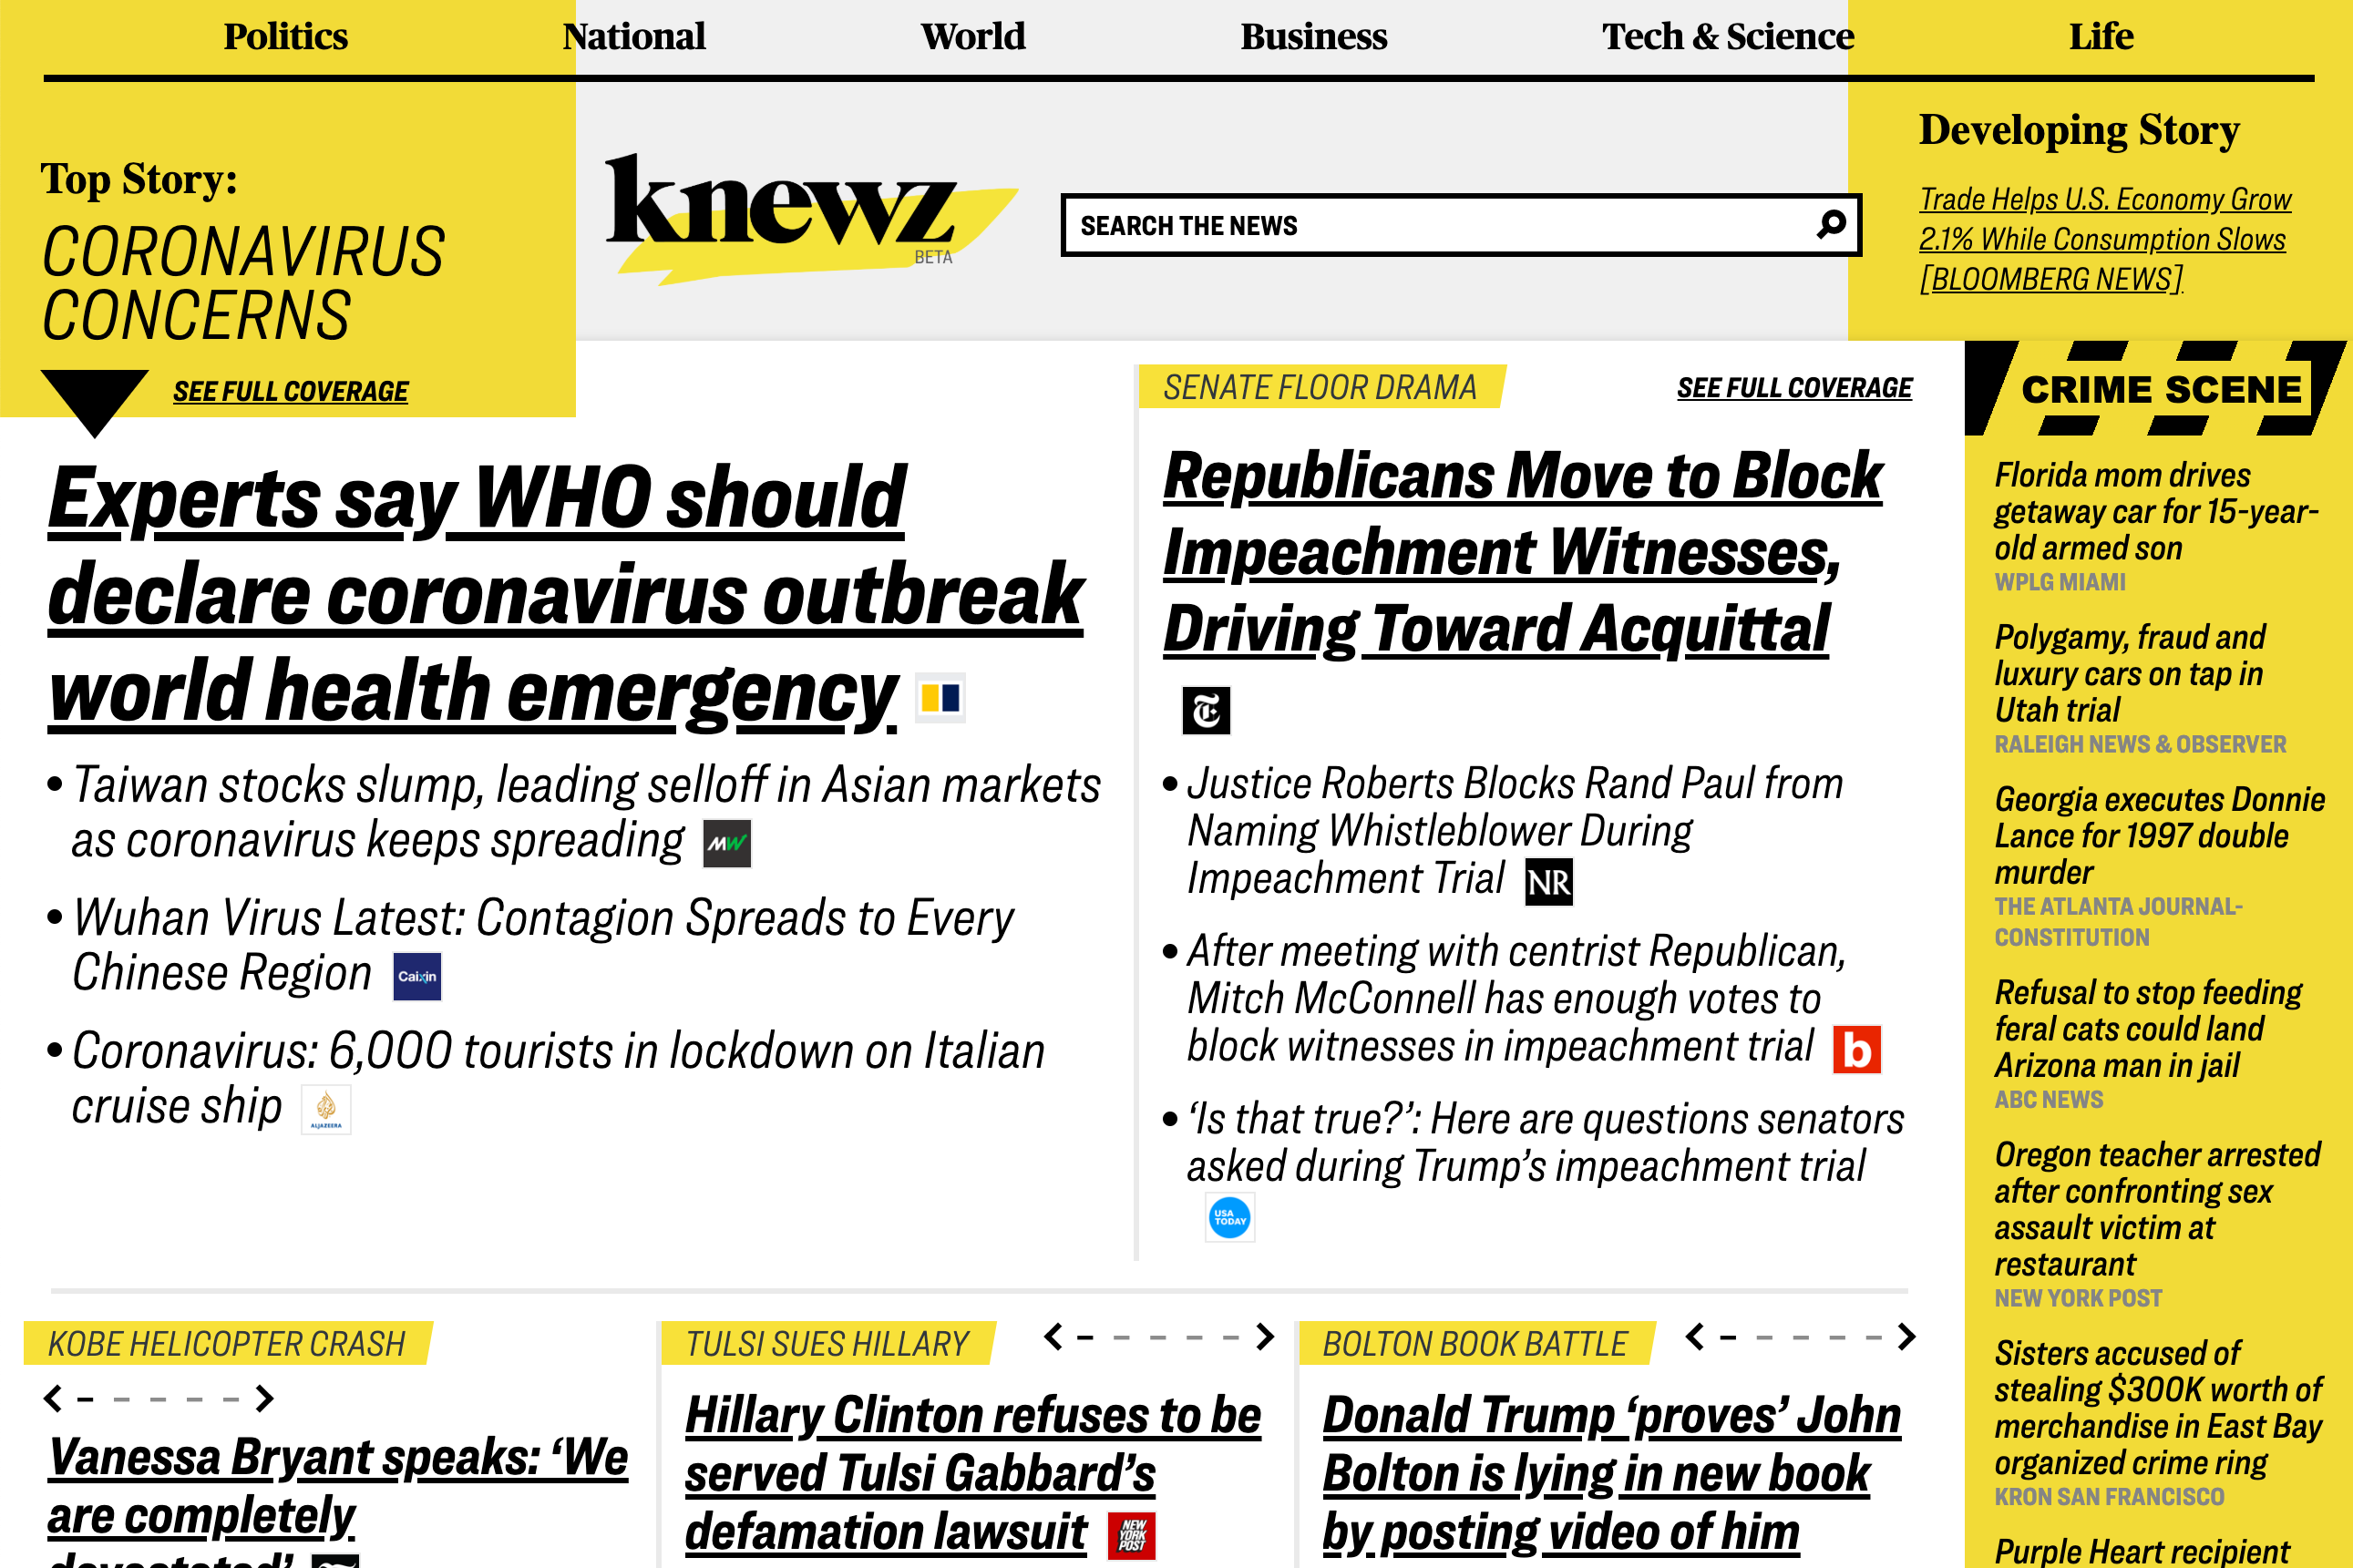 The homepage of Knewz.com